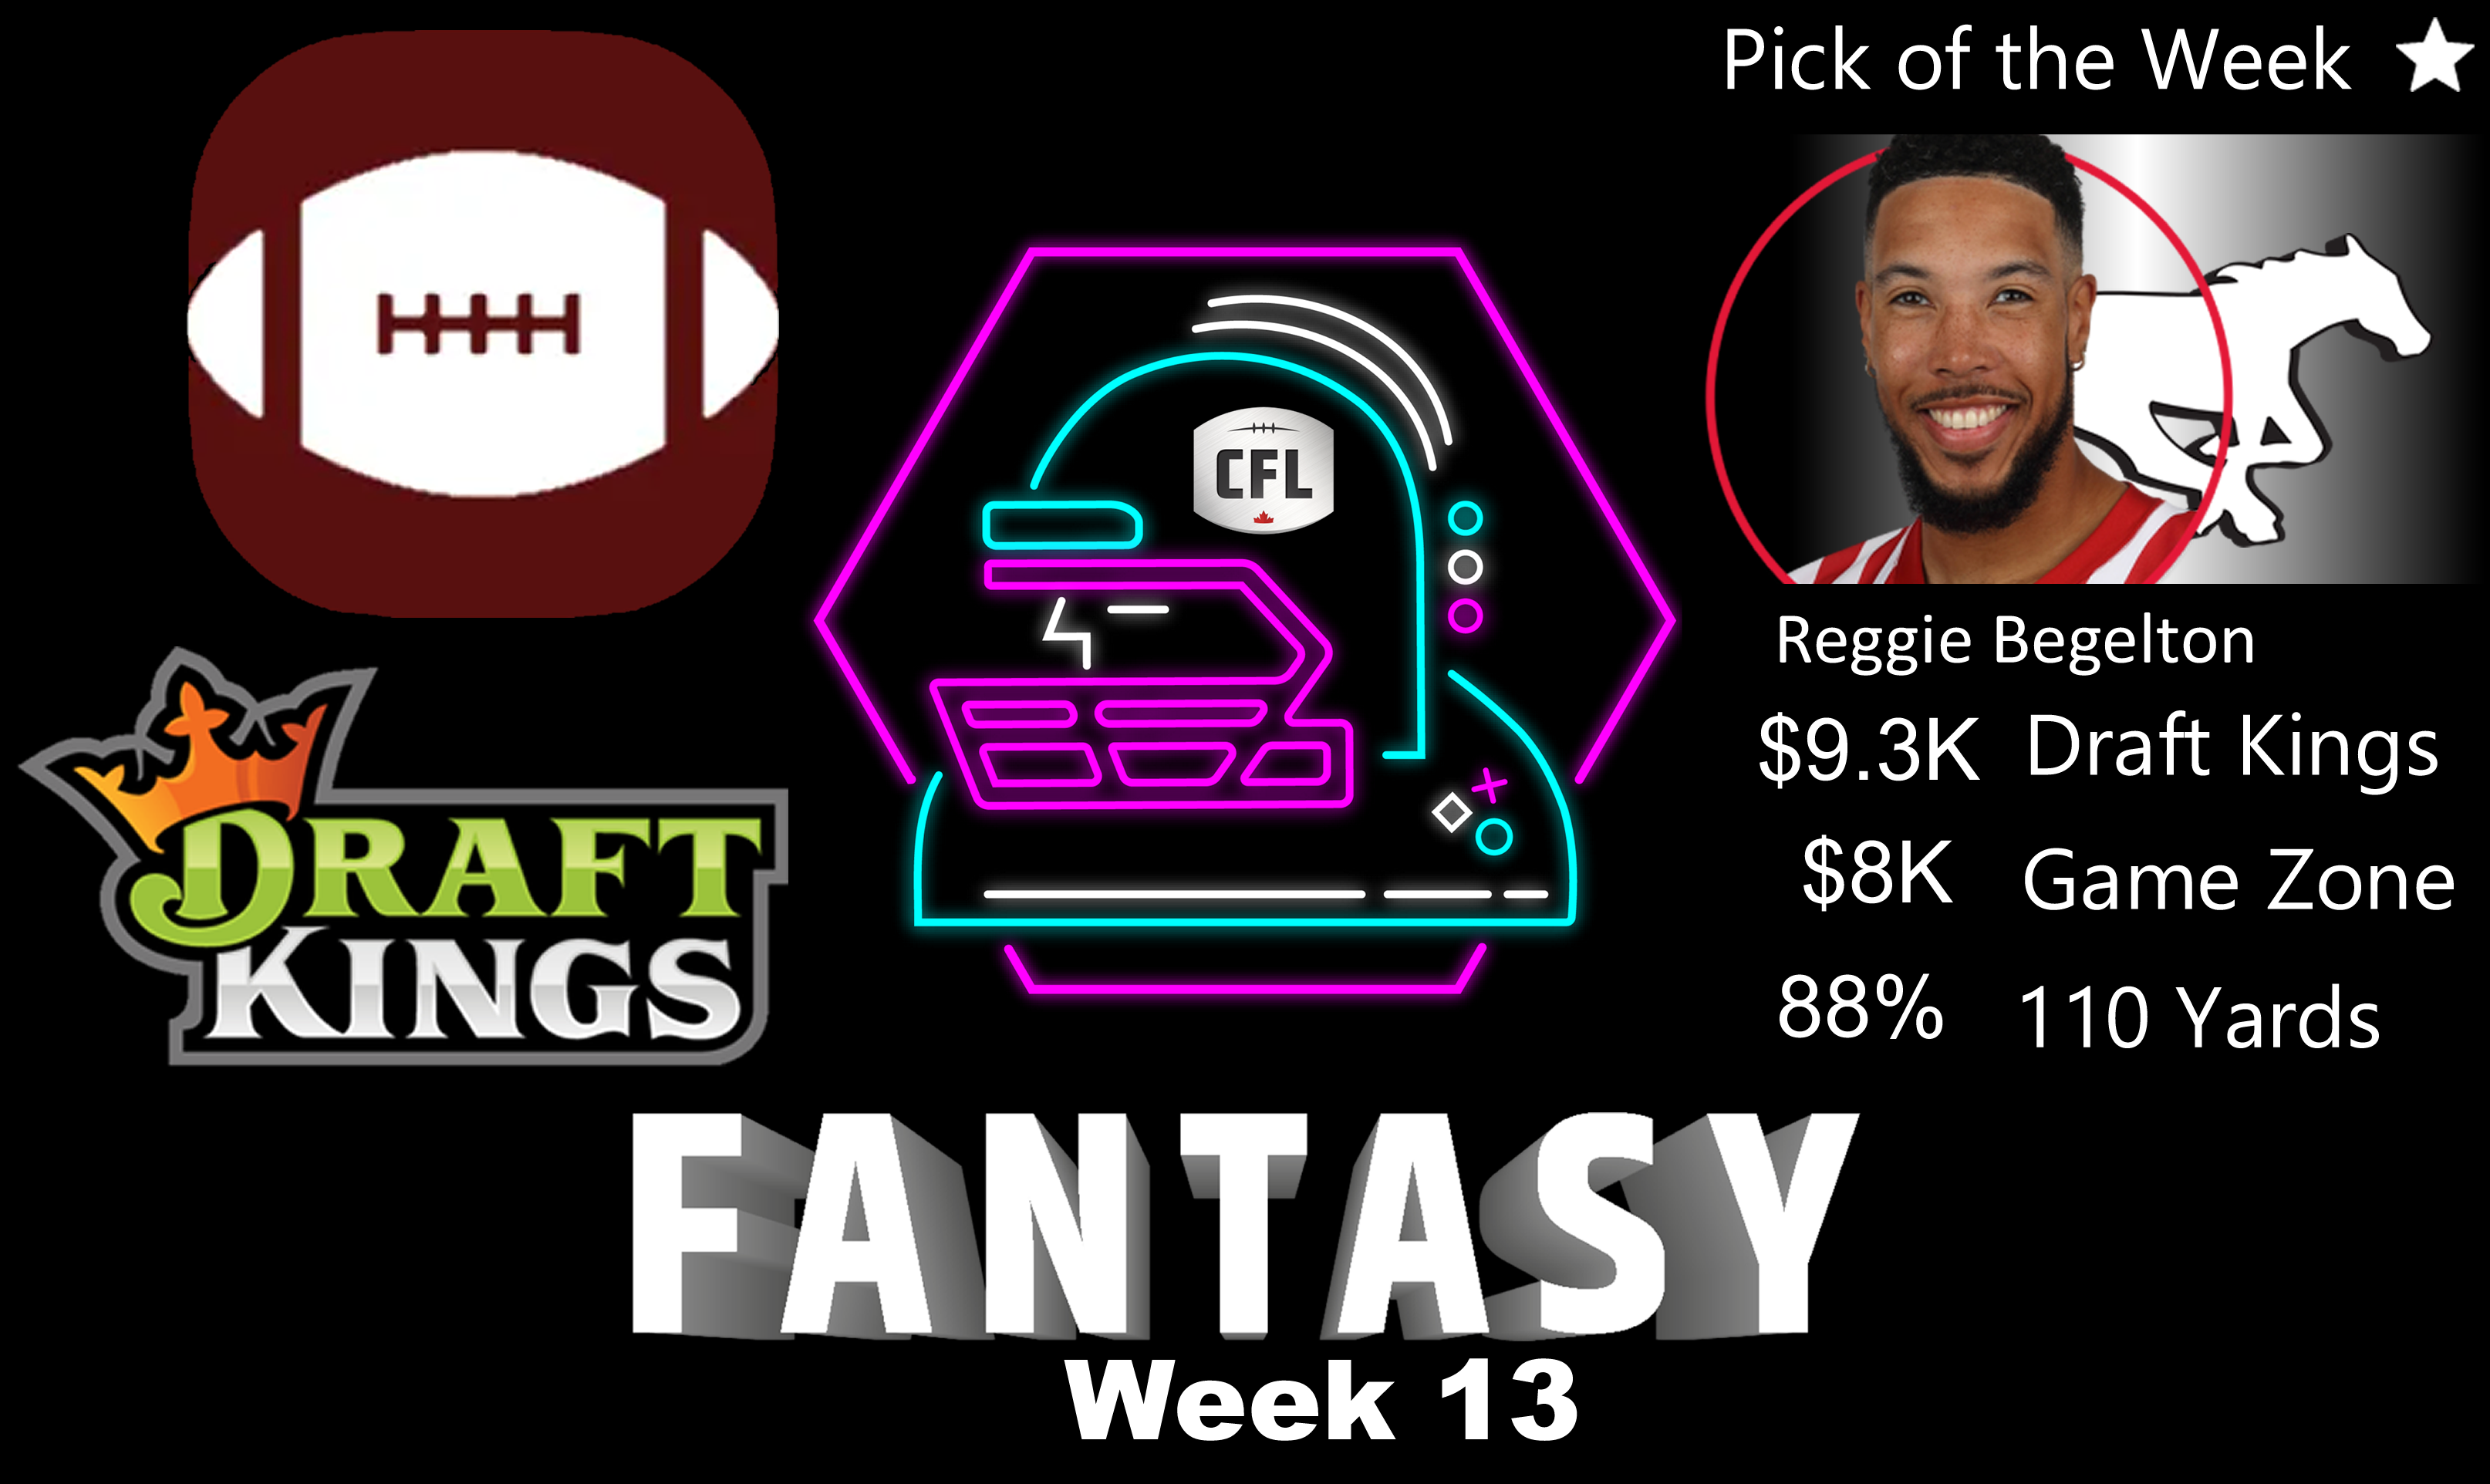 CFL Week 13 Fantasy Football Picks and Sleepers: Draft Kings, Game